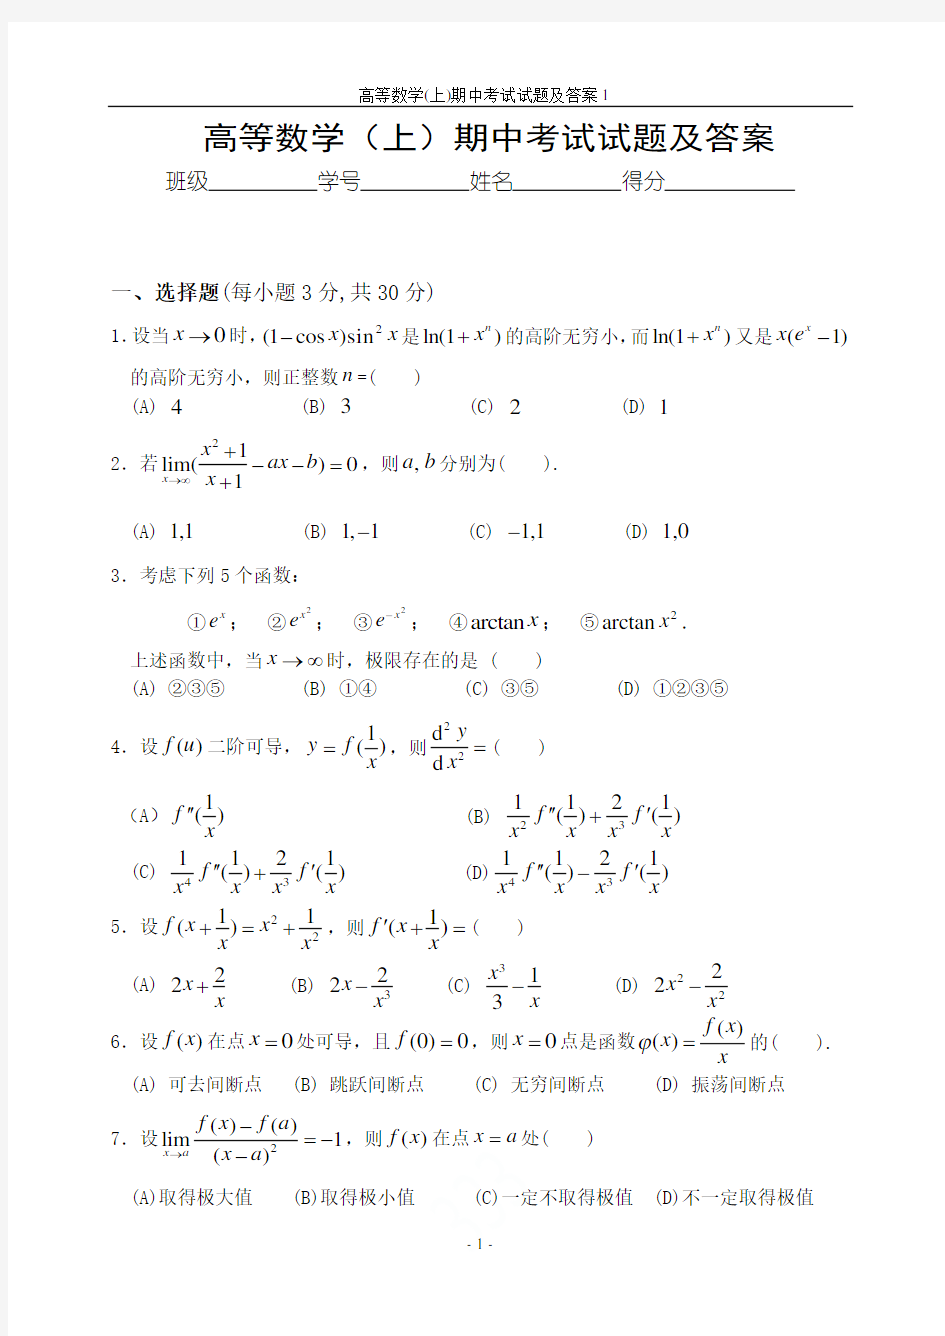 2019级高等数学(上)期中考试试题及答案1